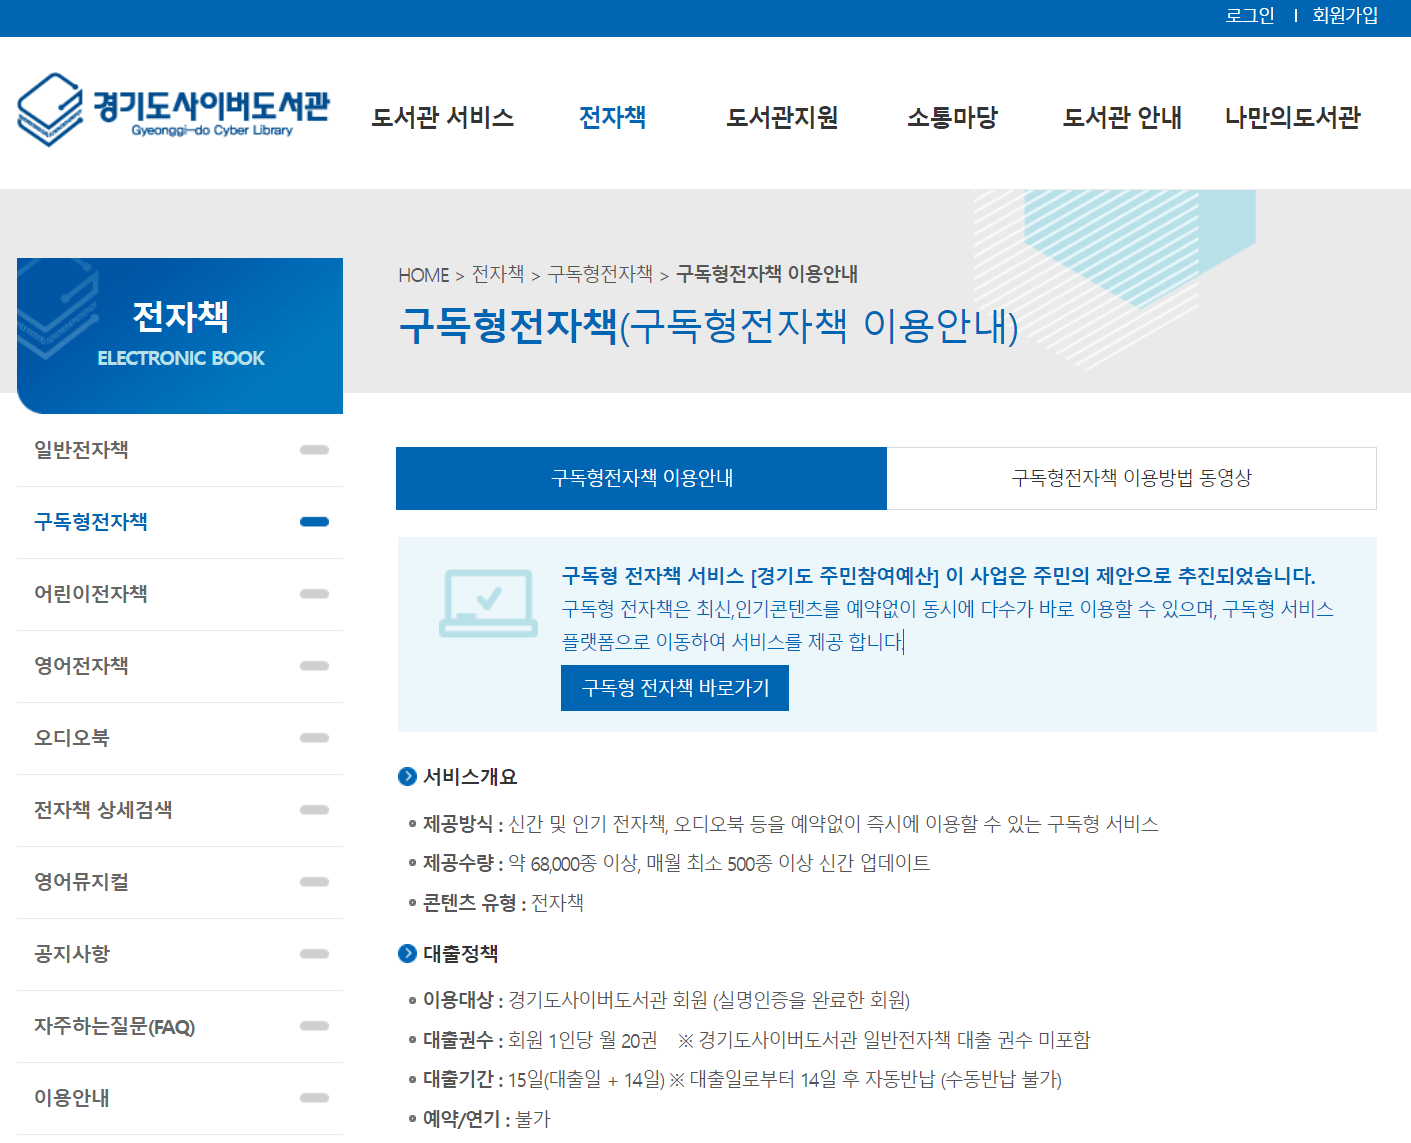 경기도 사이버 도서관의 구독형 전자책 서비스 이용안내